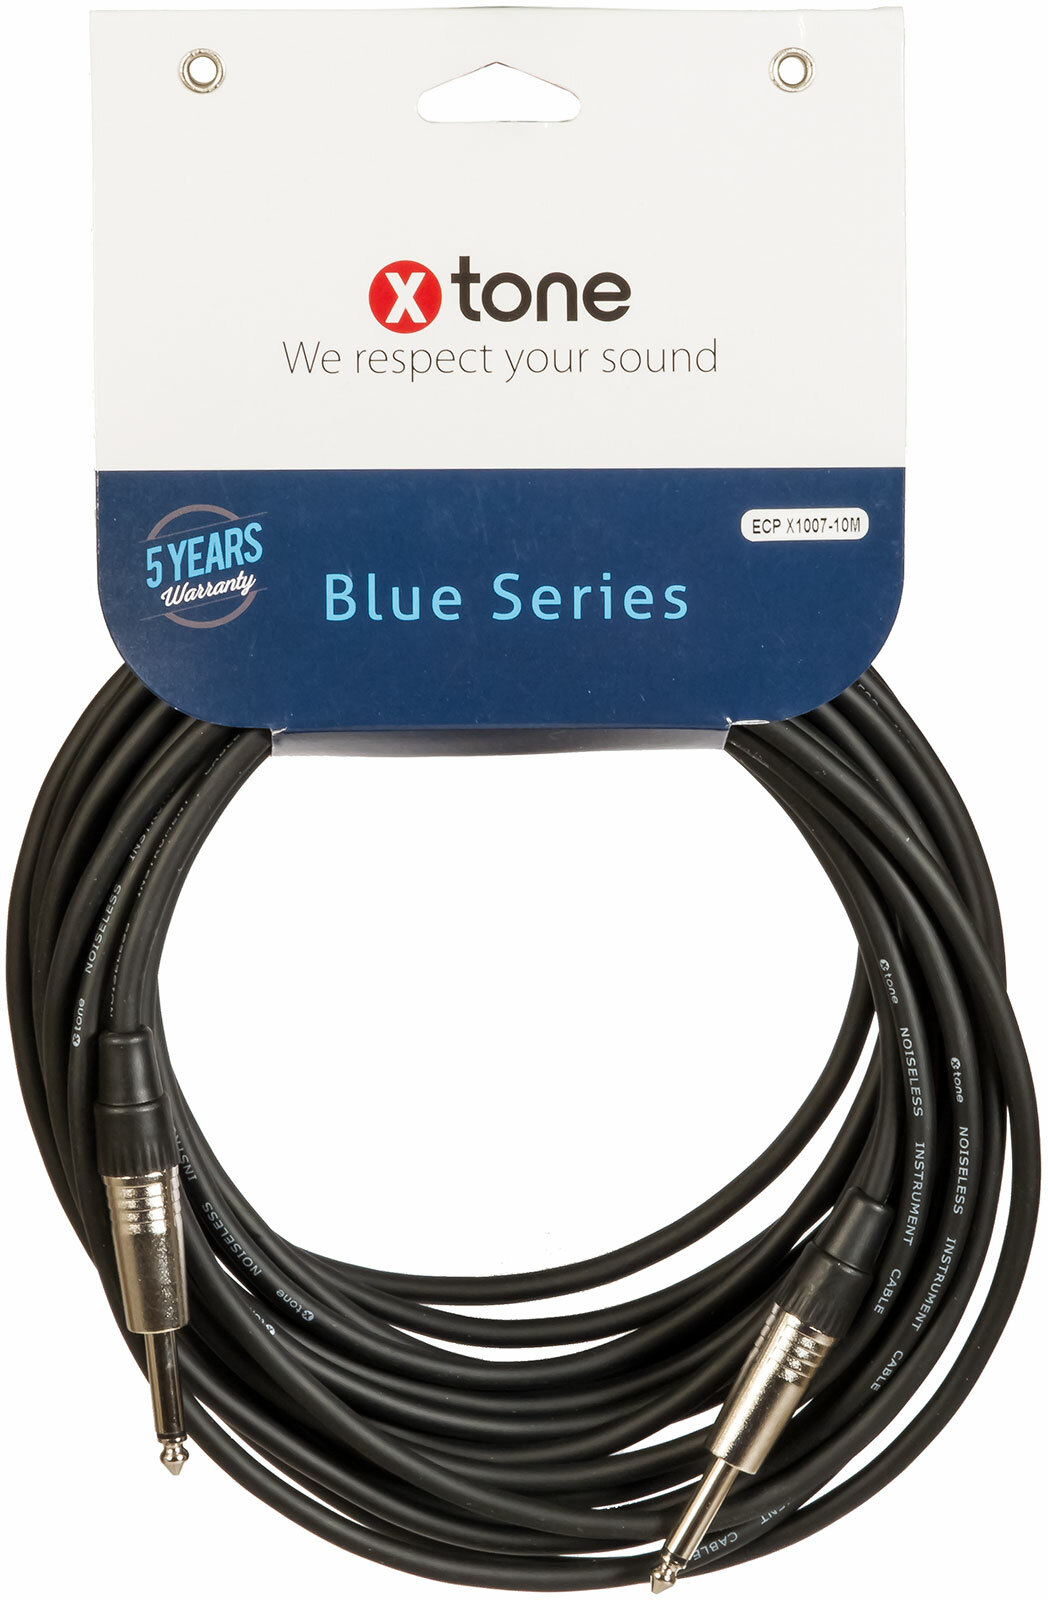 X-tone Jack / Jack 10m Blue Series (x1007-10m) - Cable - Main picture